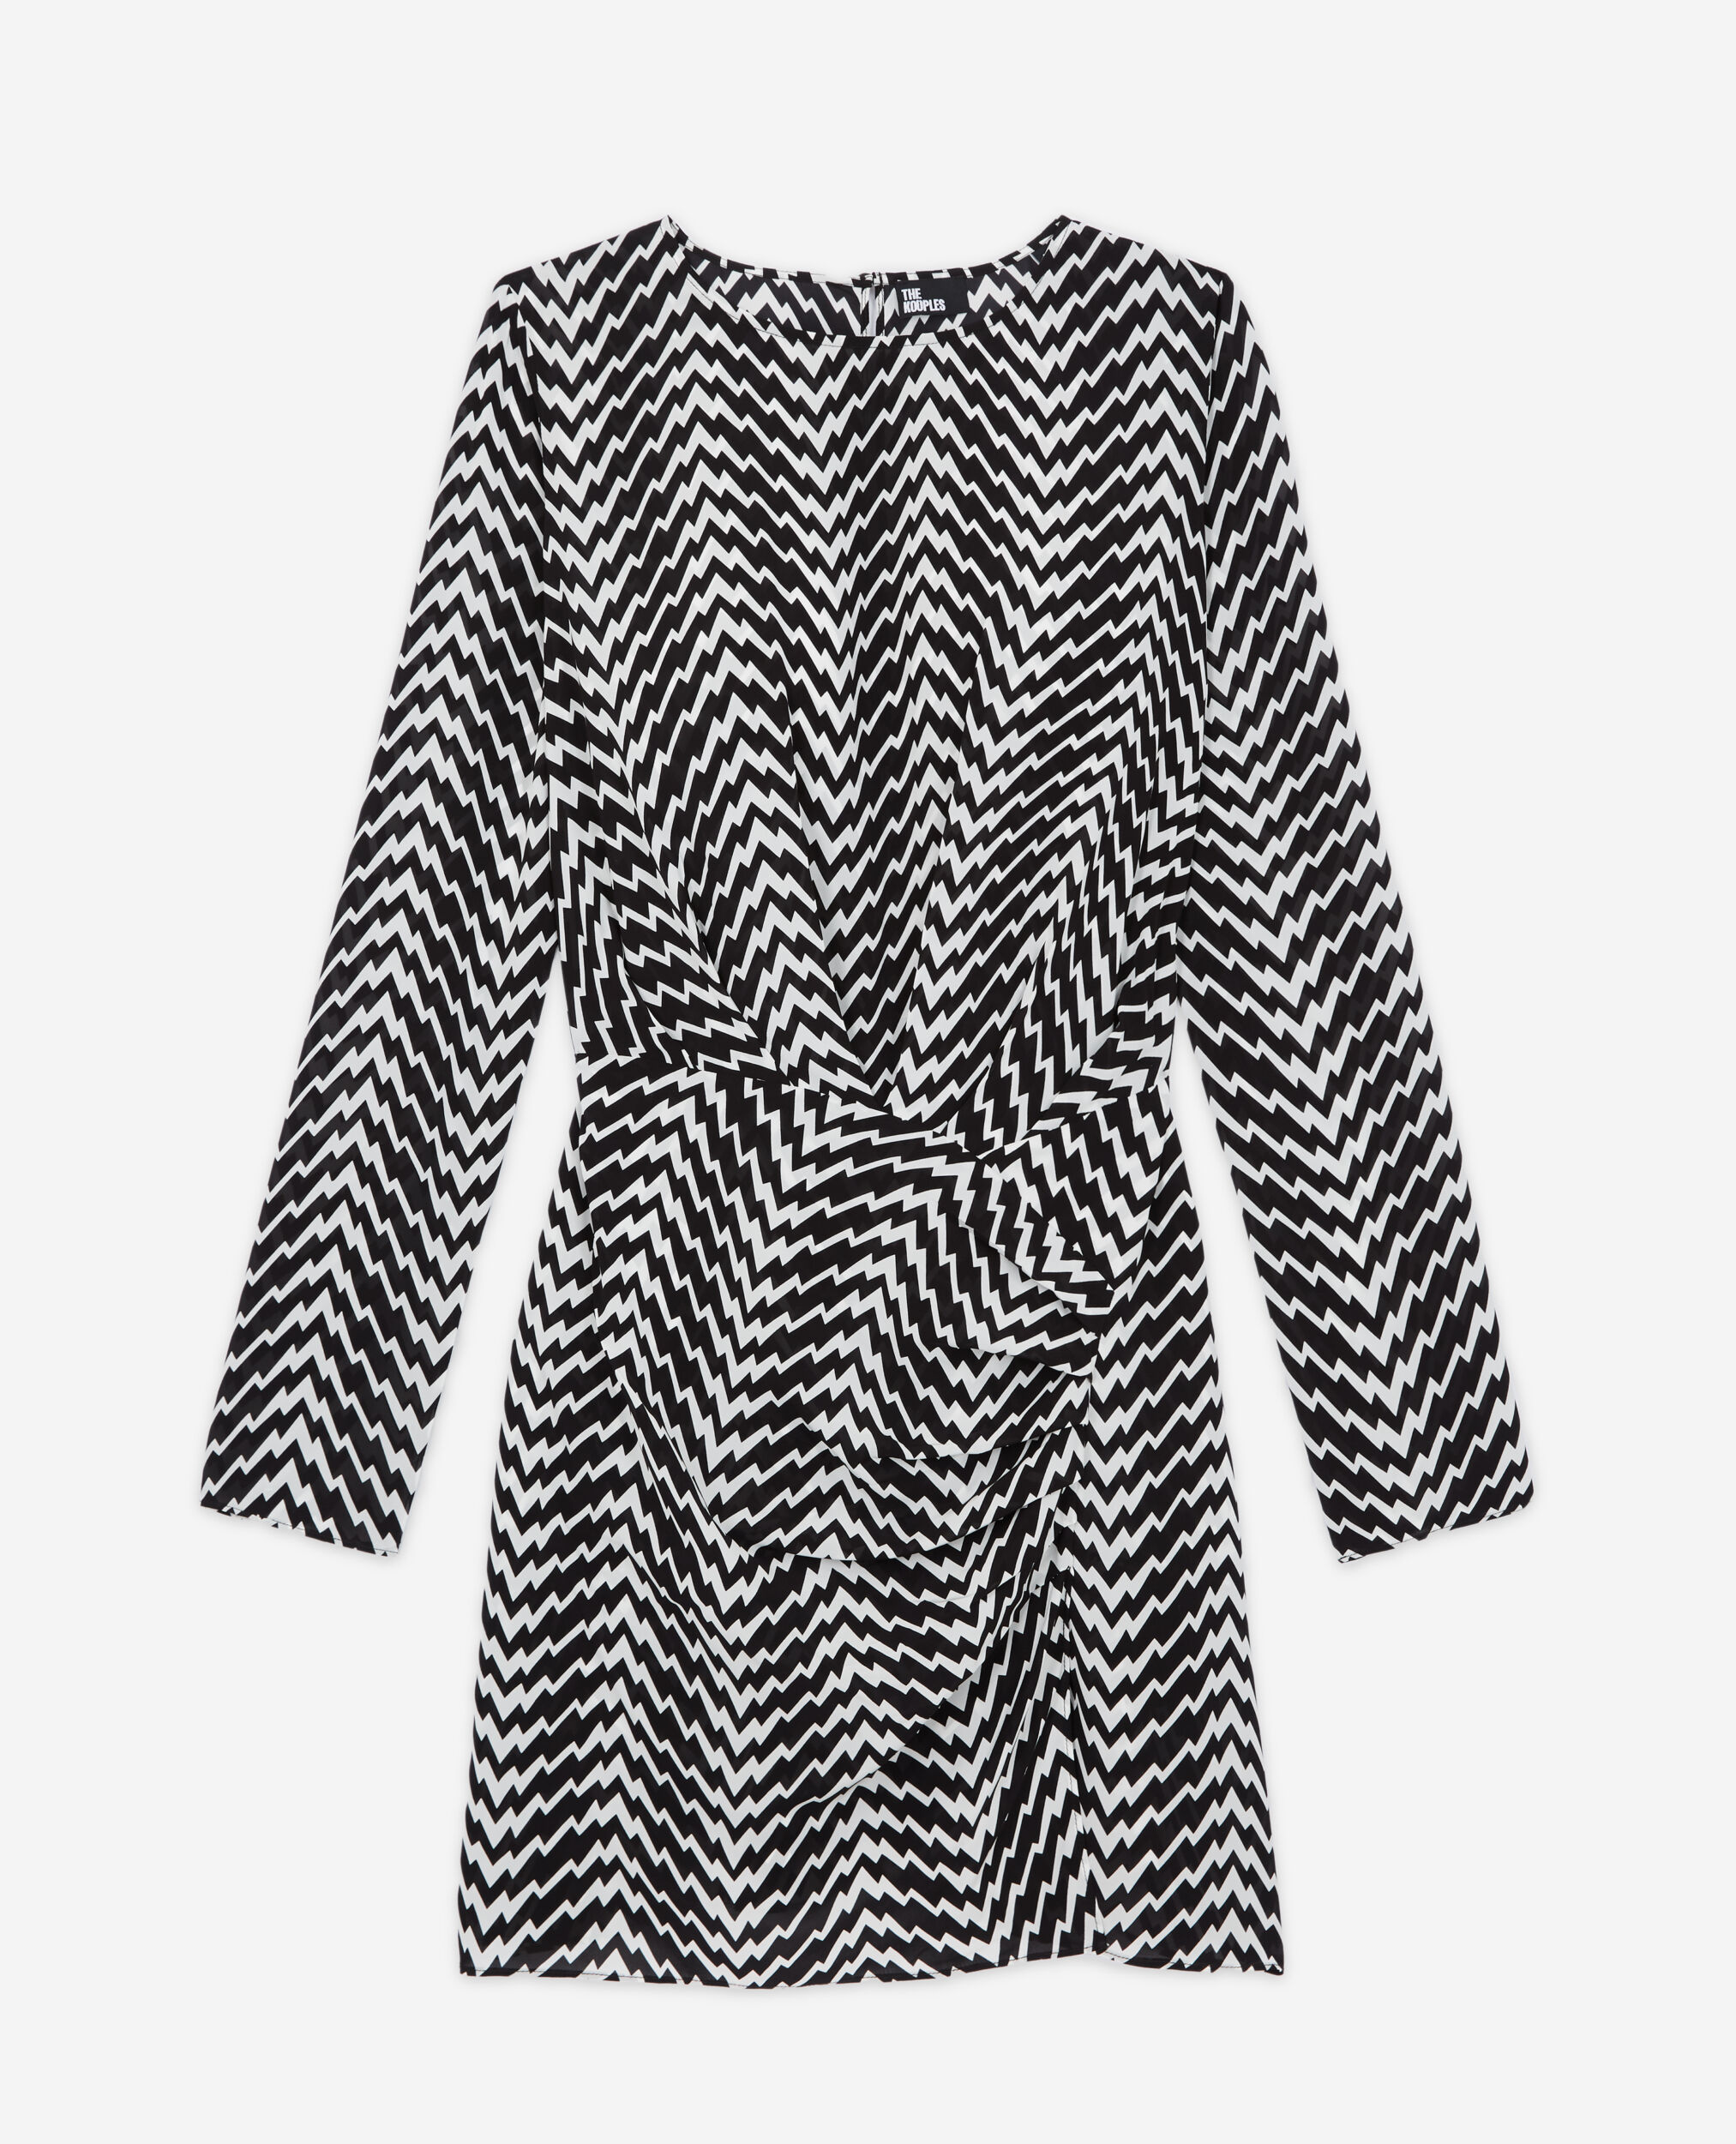 Robe courte imprimée zigzag noire et blanche, BLACK WHITE, hi-res image number null